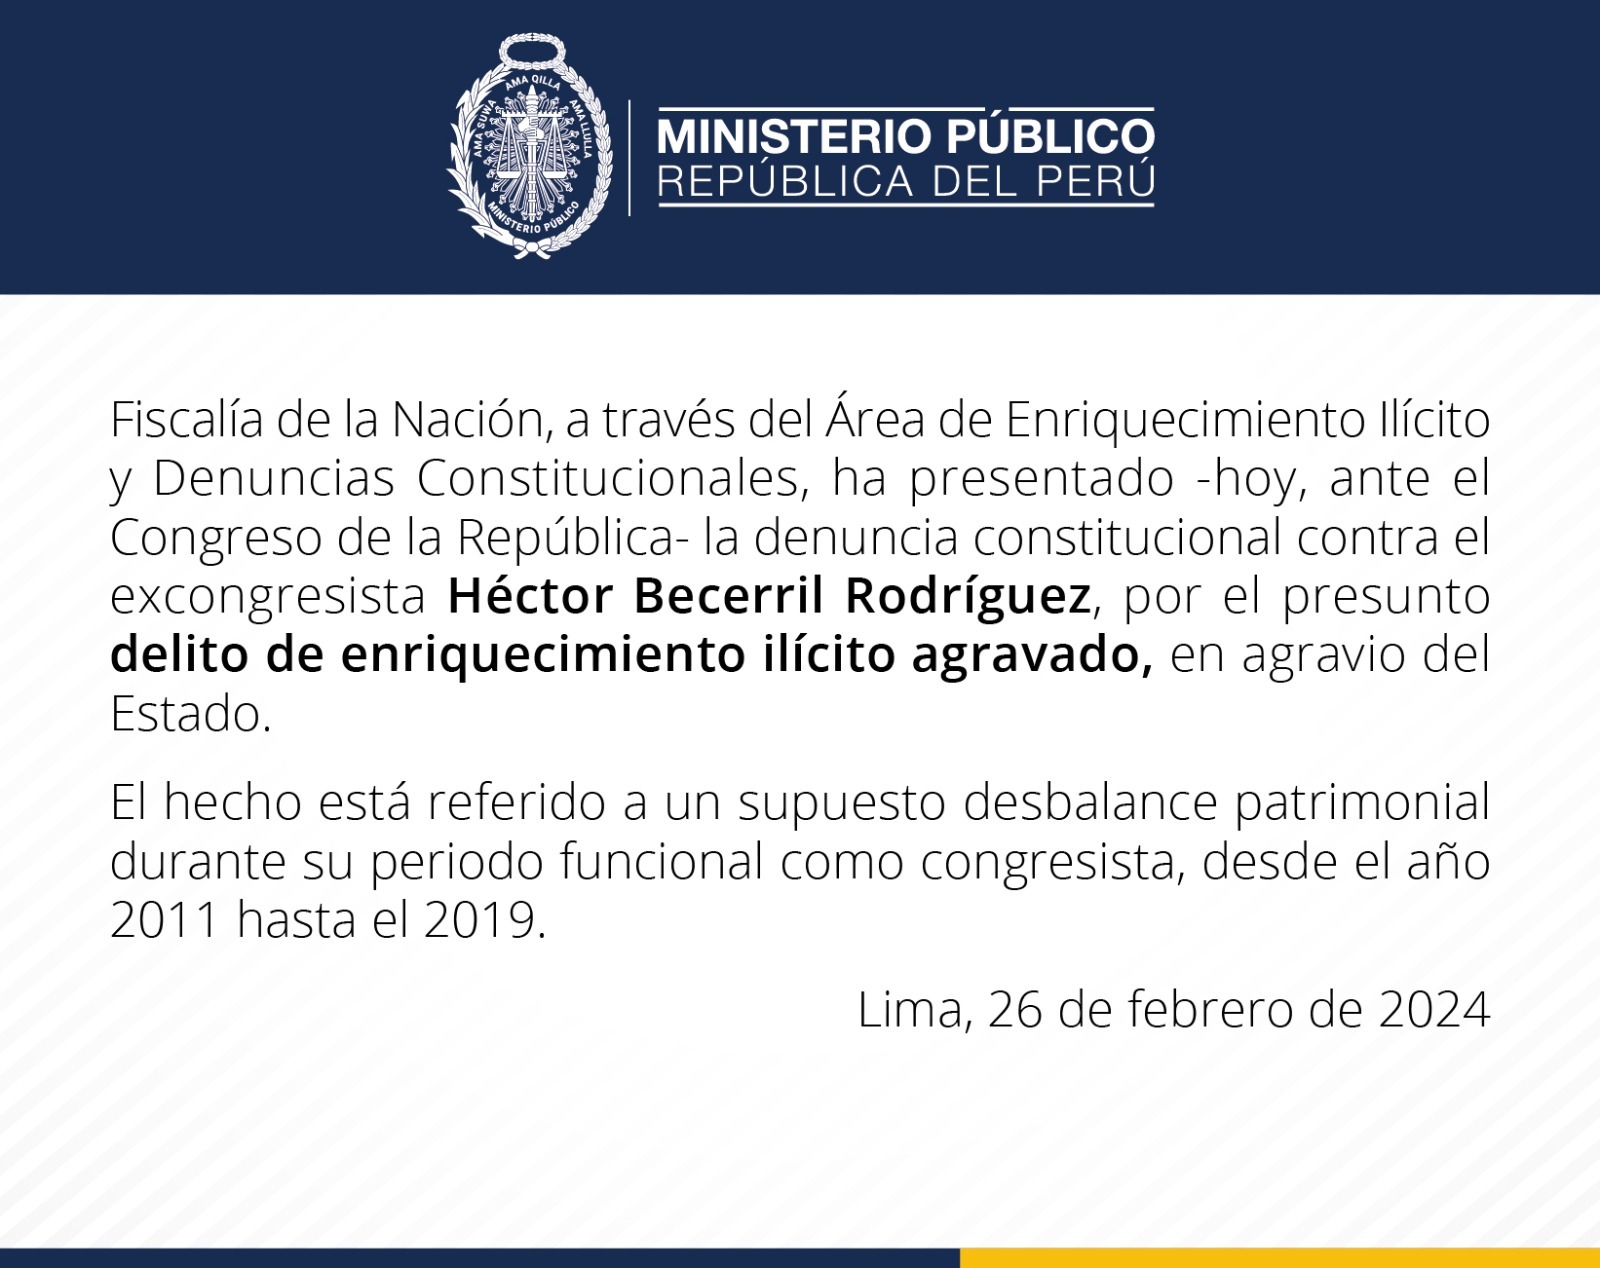 Héctor Becerril: Fiscalía presentó denuncia constitucional contra excongresista